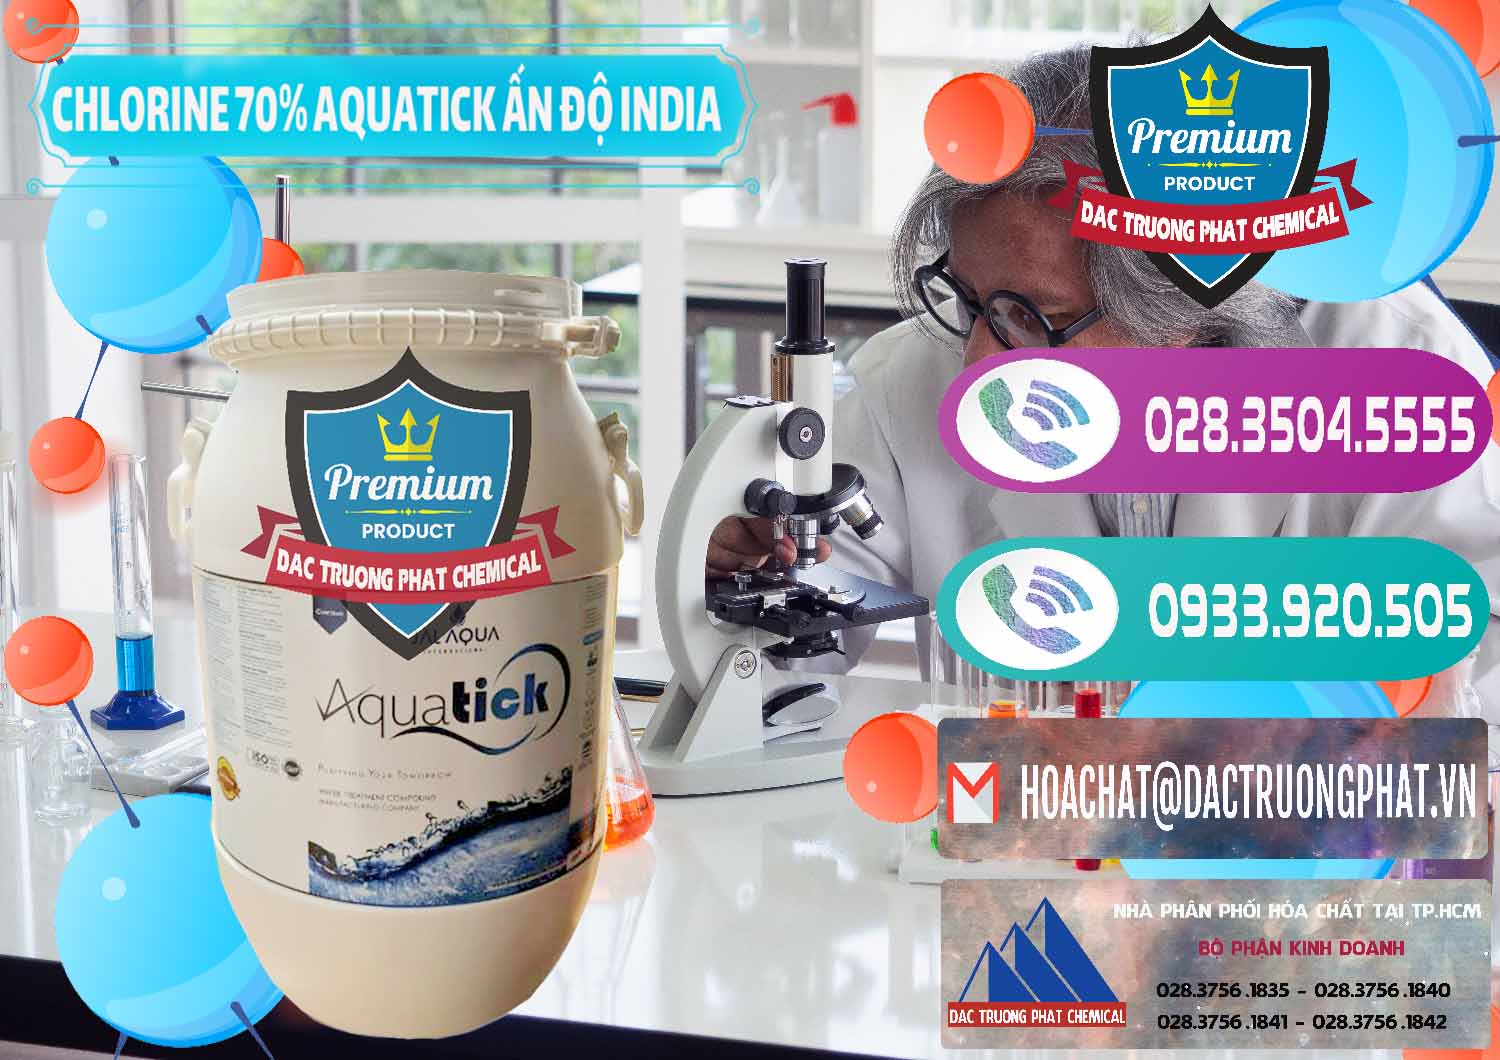 Kinh doanh ( bán ) Chlorine – Clorin 70% Aquatick Jal Aqua Ấn Độ India - 0215 - Cty cung cấp ( phân phối ) hóa chất tại TP.HCM - hoachatxulynuoc.com